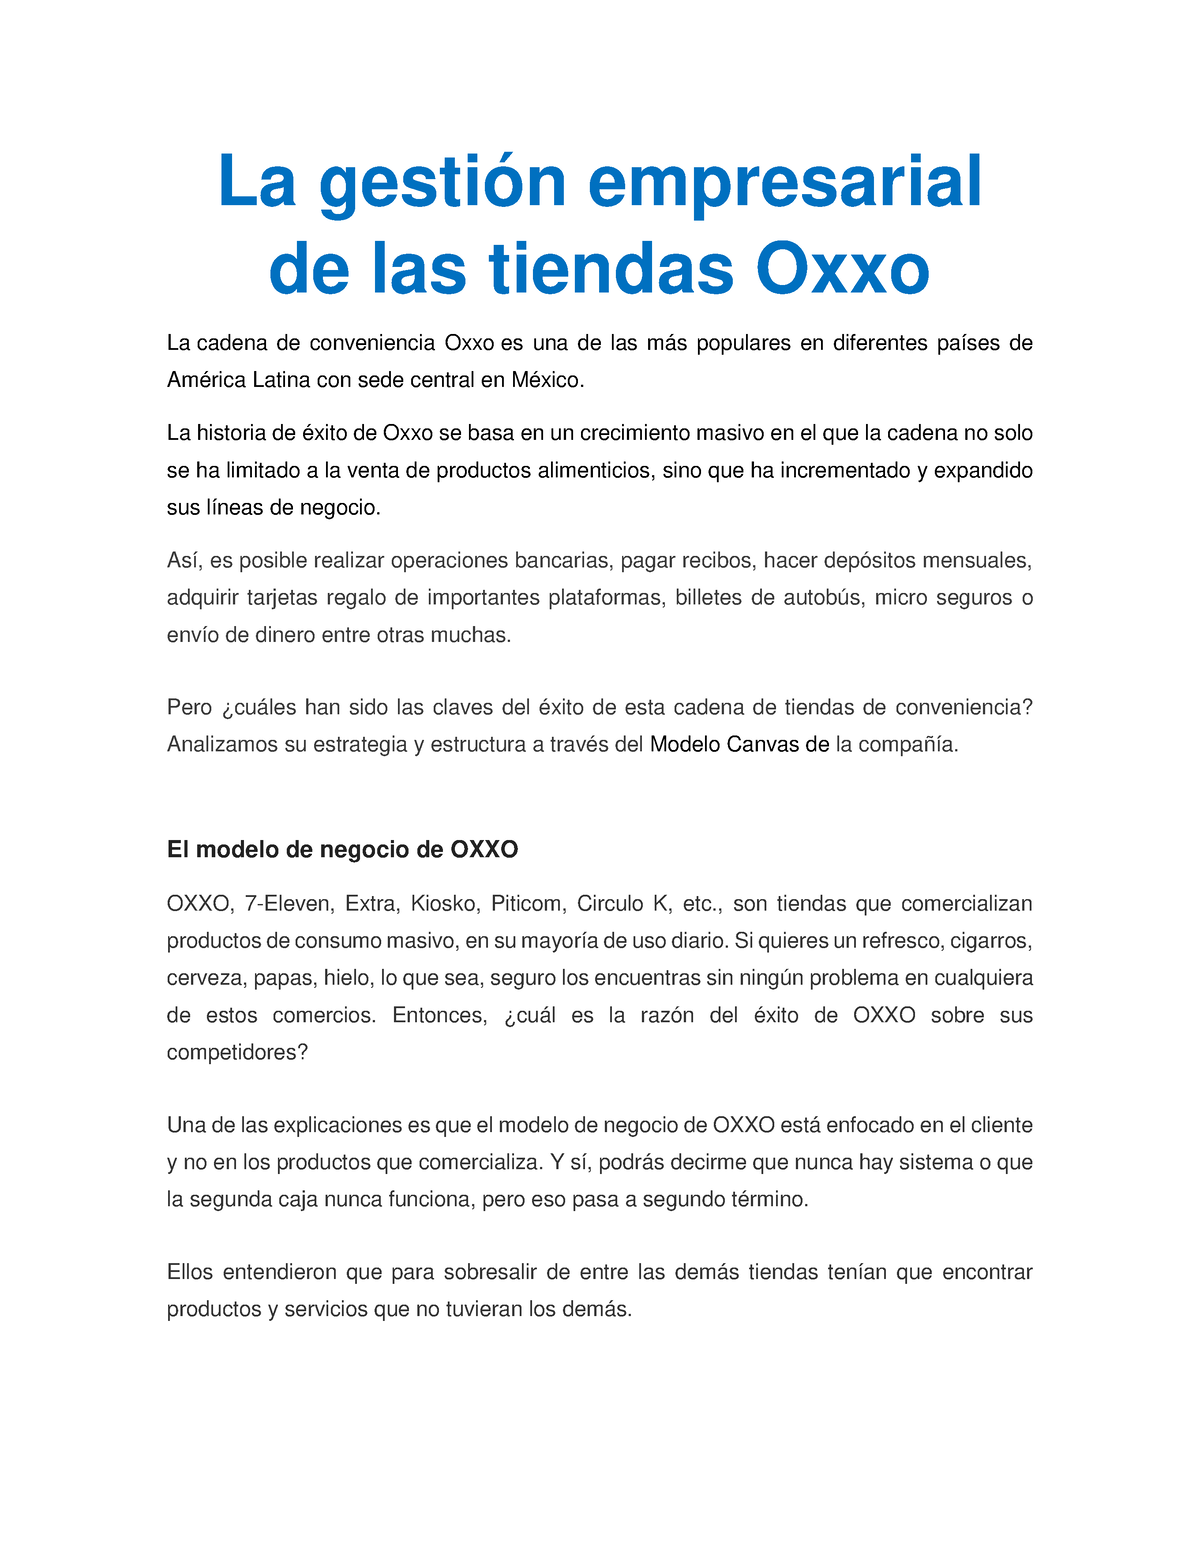 La gestión empresarial de las tiendas Oxxo. Mirna Jolette Reyes Perez - La  gestión empresarial de - Studocu